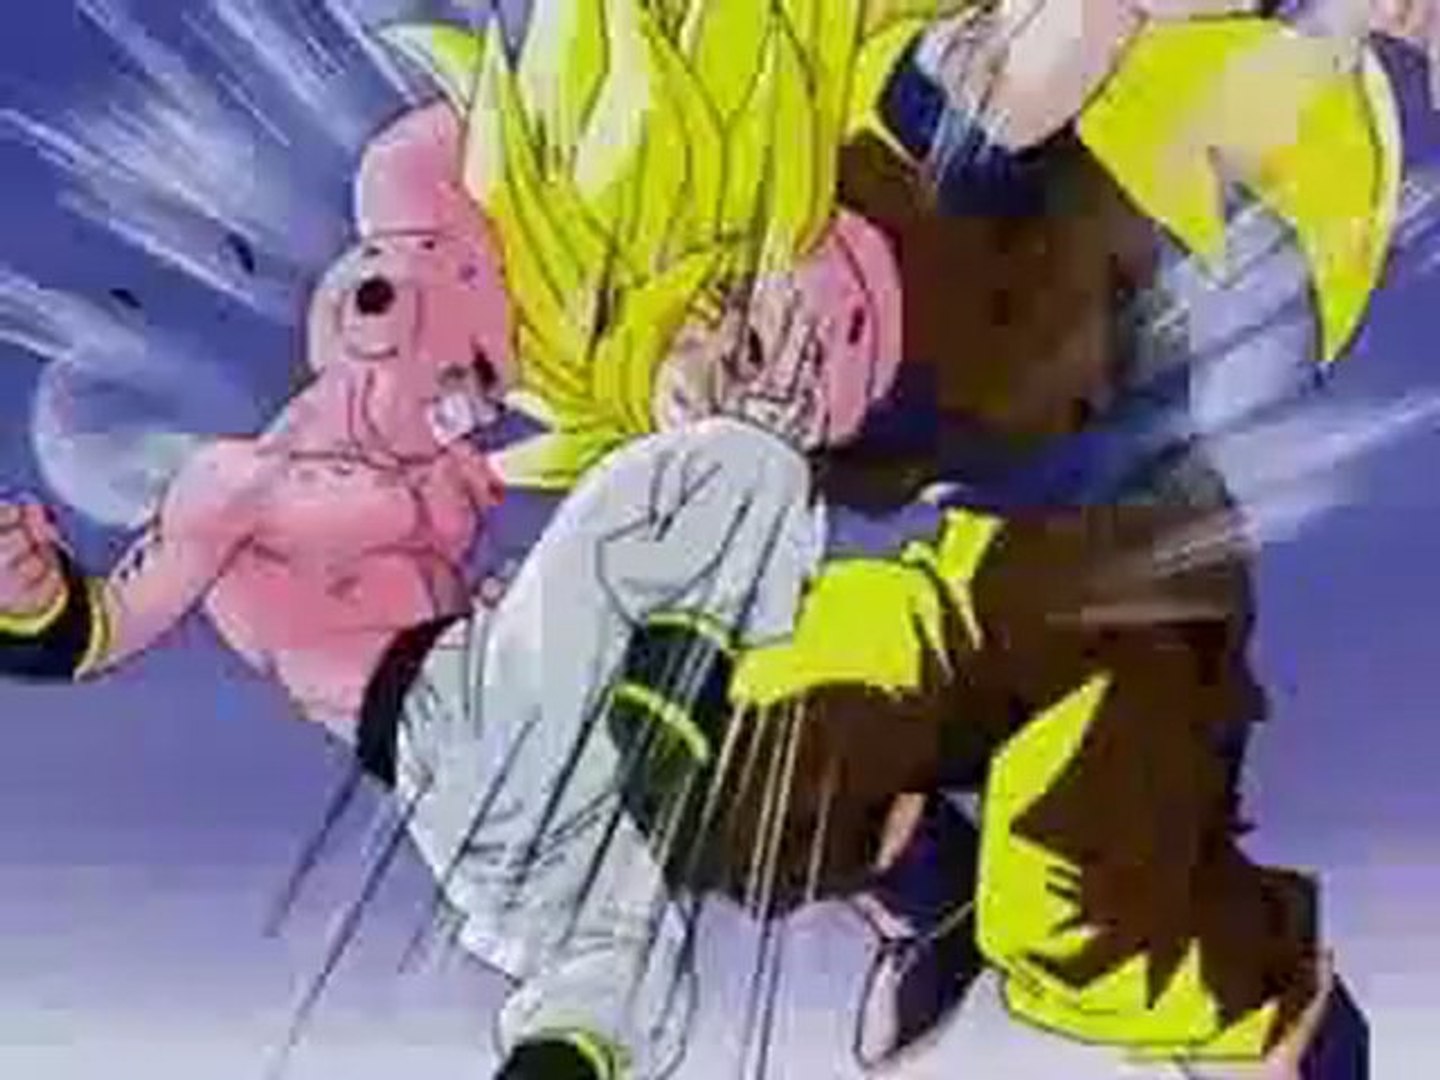 Dragon ball Z Goku vs Majin Boo #dragonball #dragonballz #goku #majinb